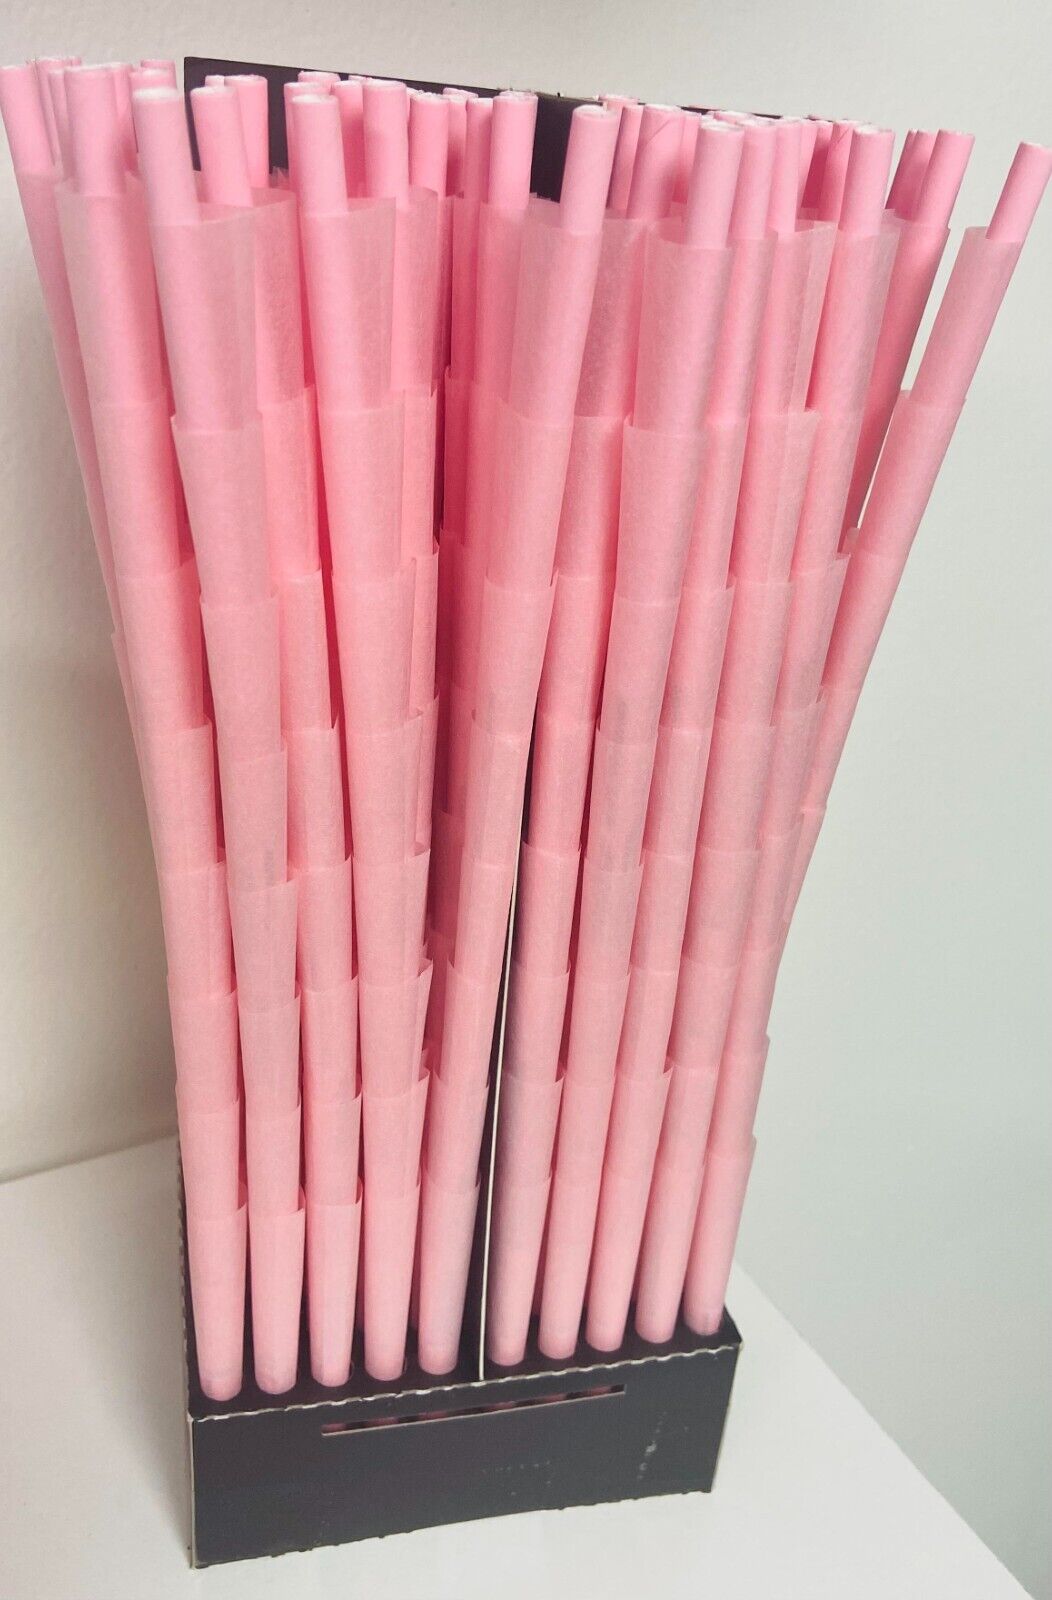 50X Blazy Susan Pink  Cones 1 1/4 Size Special Size Cones -Rolled Cones  50 CT